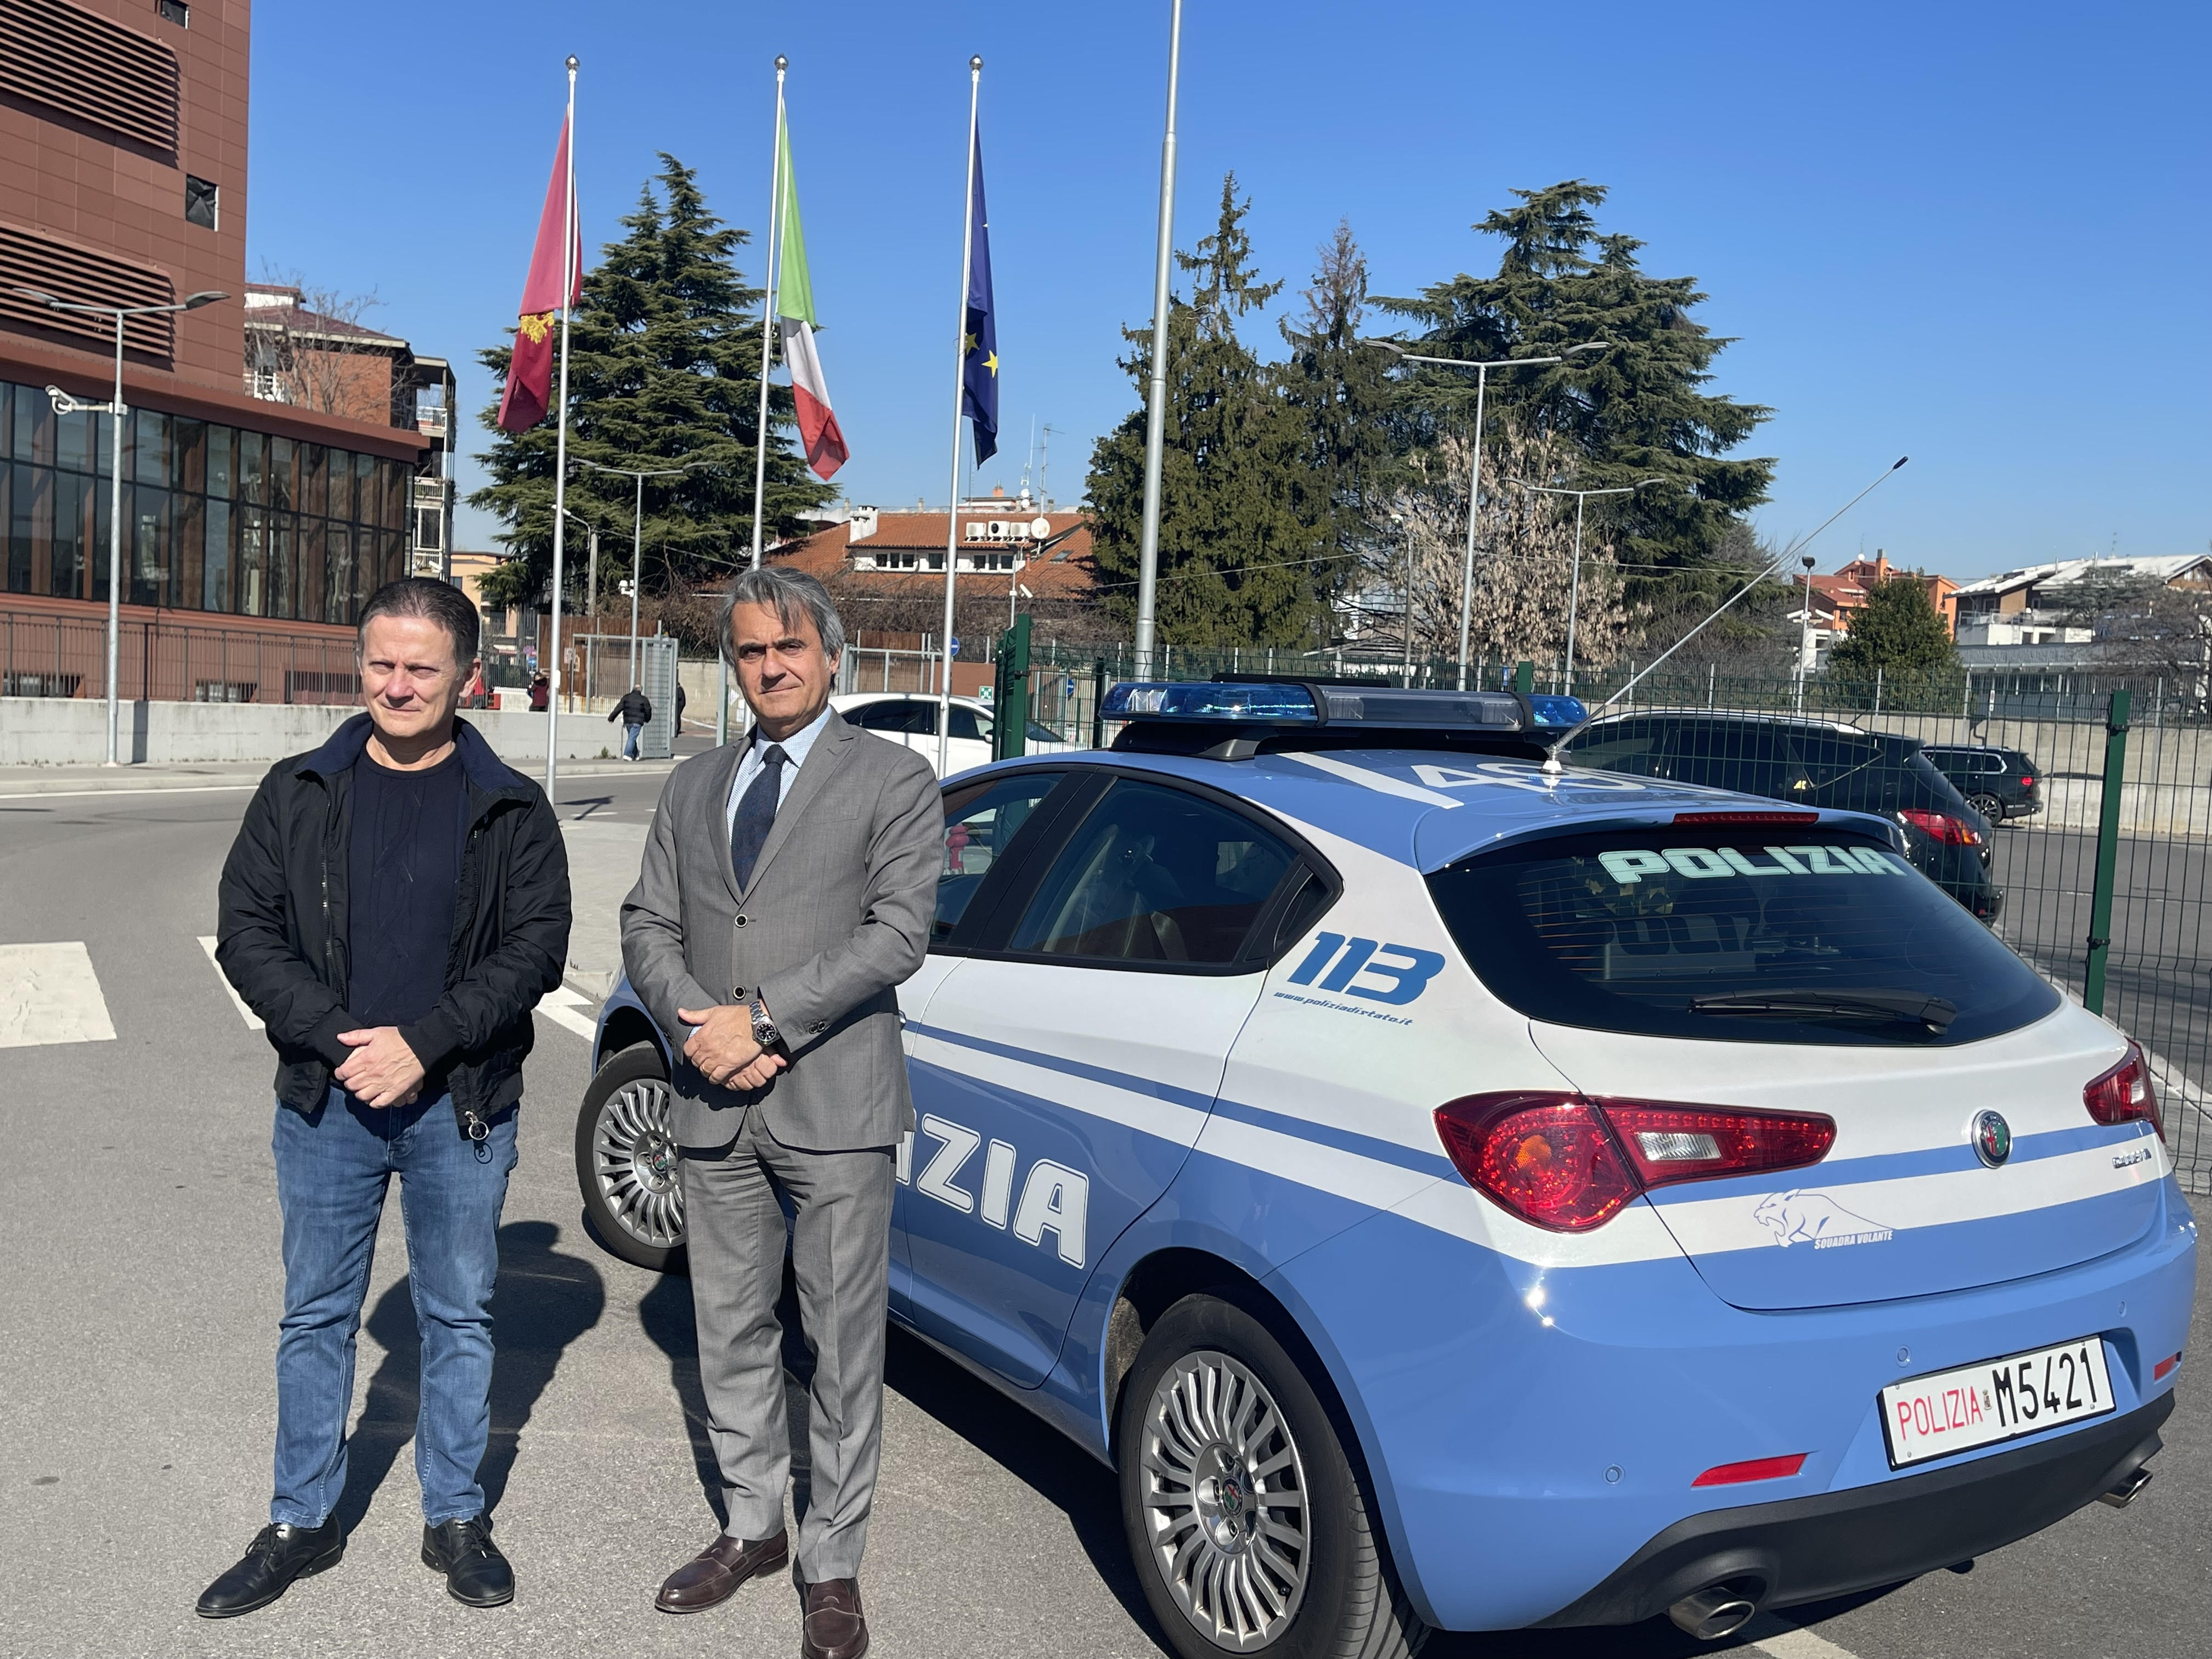 Monza e Brianza: Il Questore saluta il Sostituto Commissario Sandro Di Girolamo